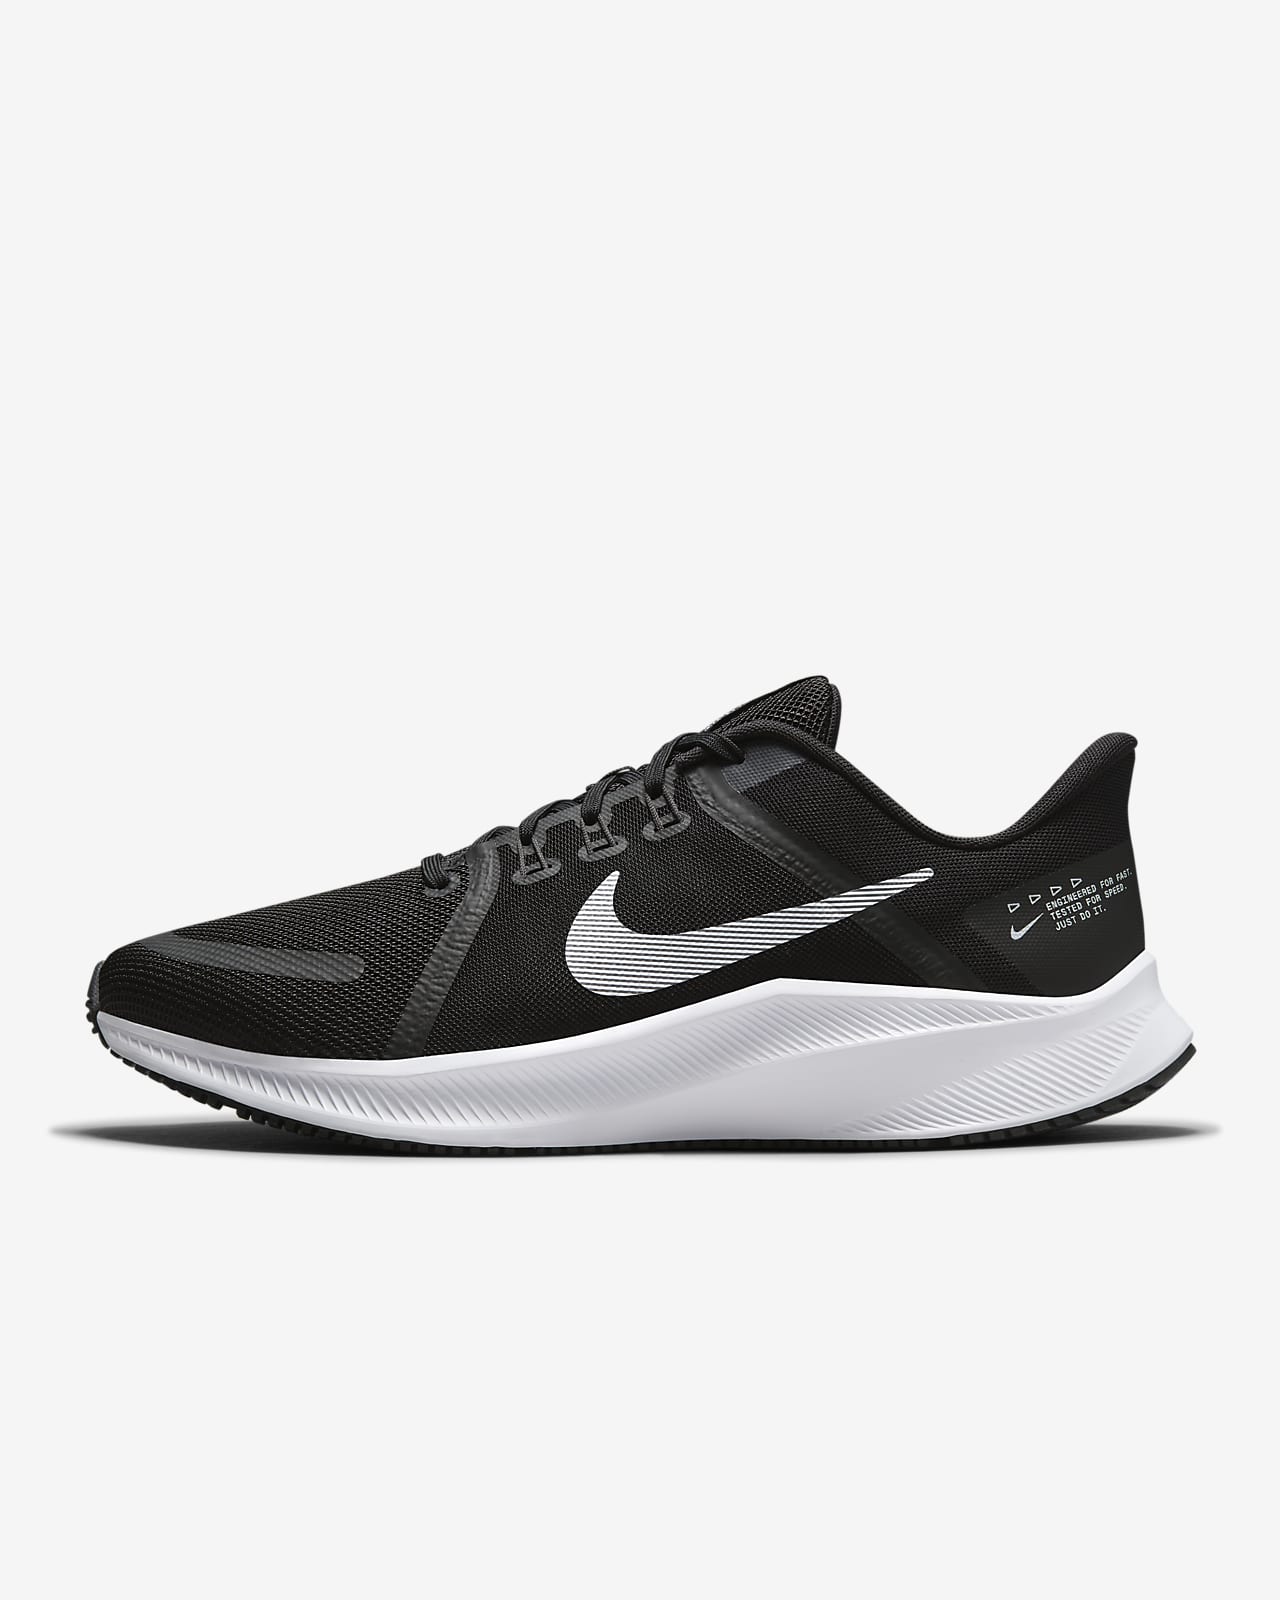 Ανδρικό παπούτσι για τρέξιμο σε δρόμο Nike Quest 4